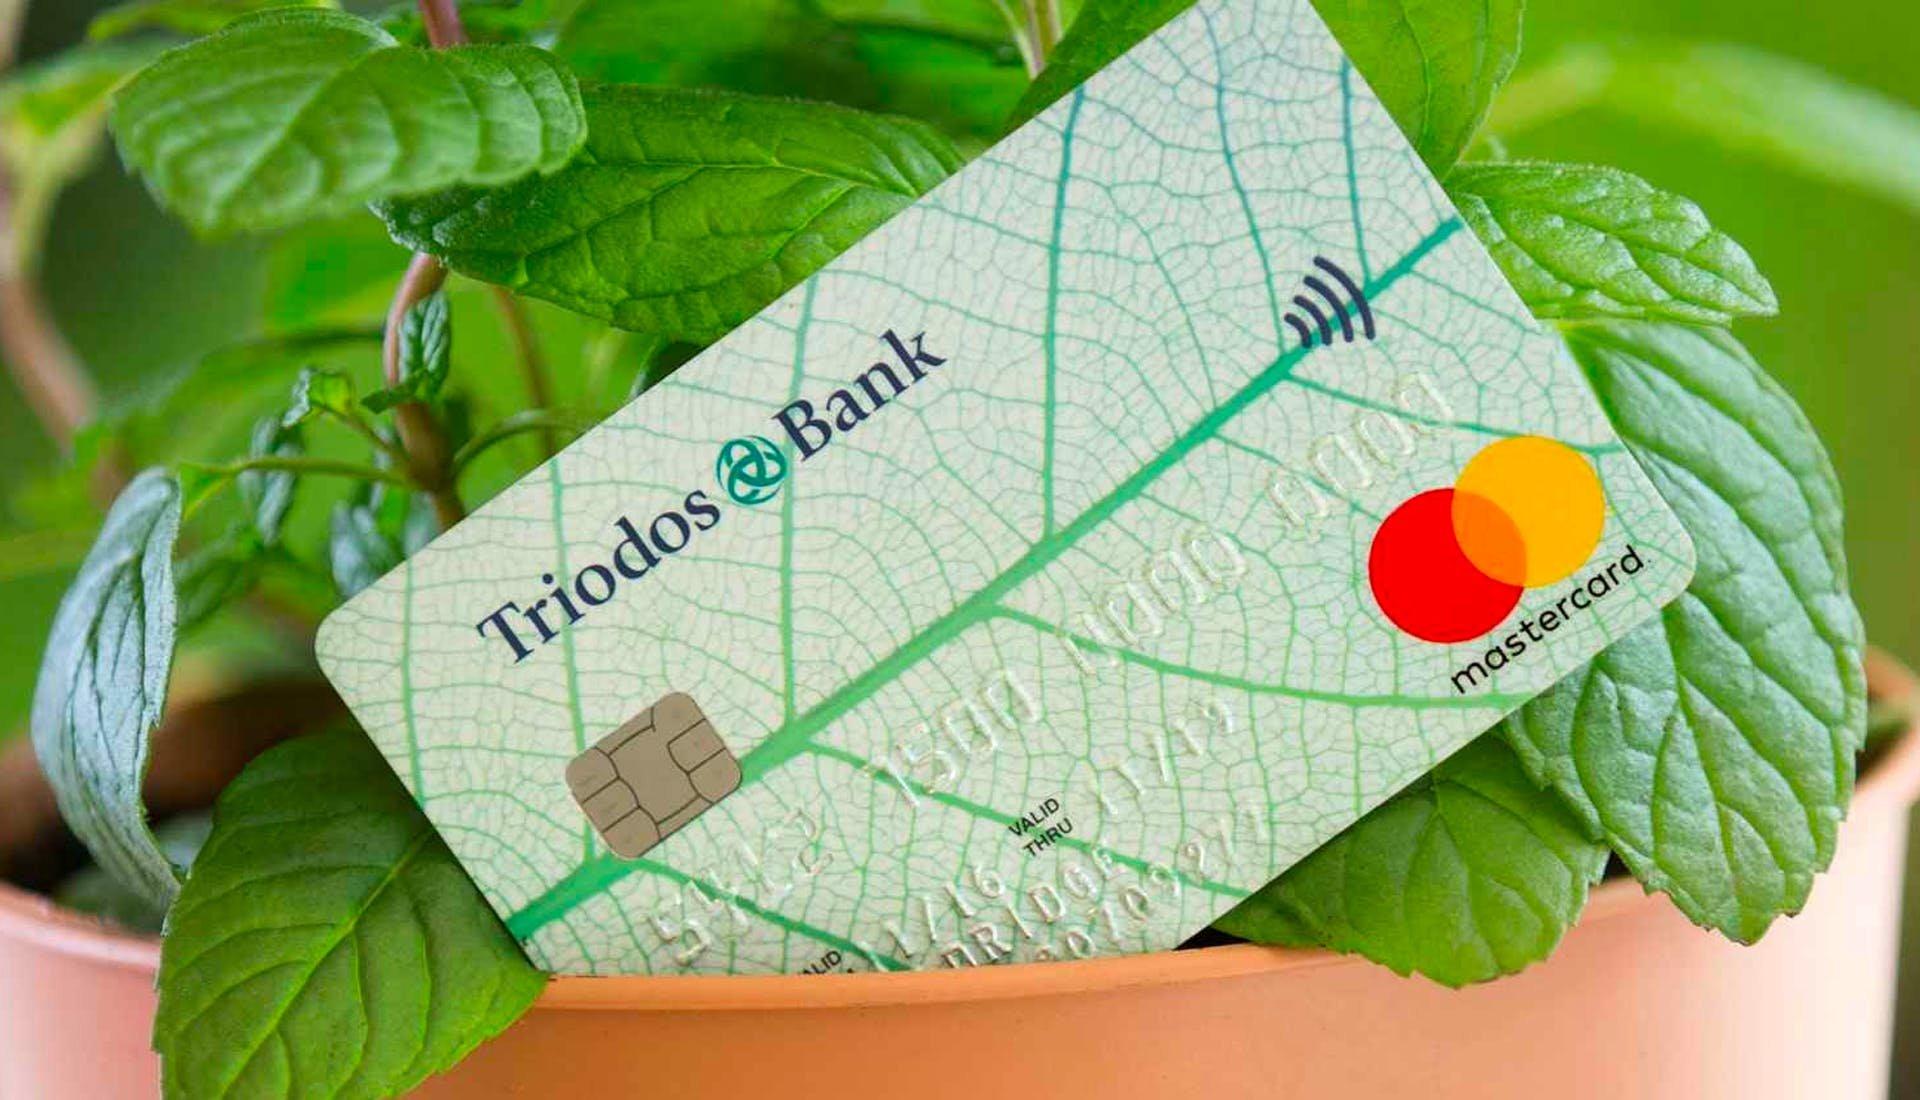 Triodos bank card